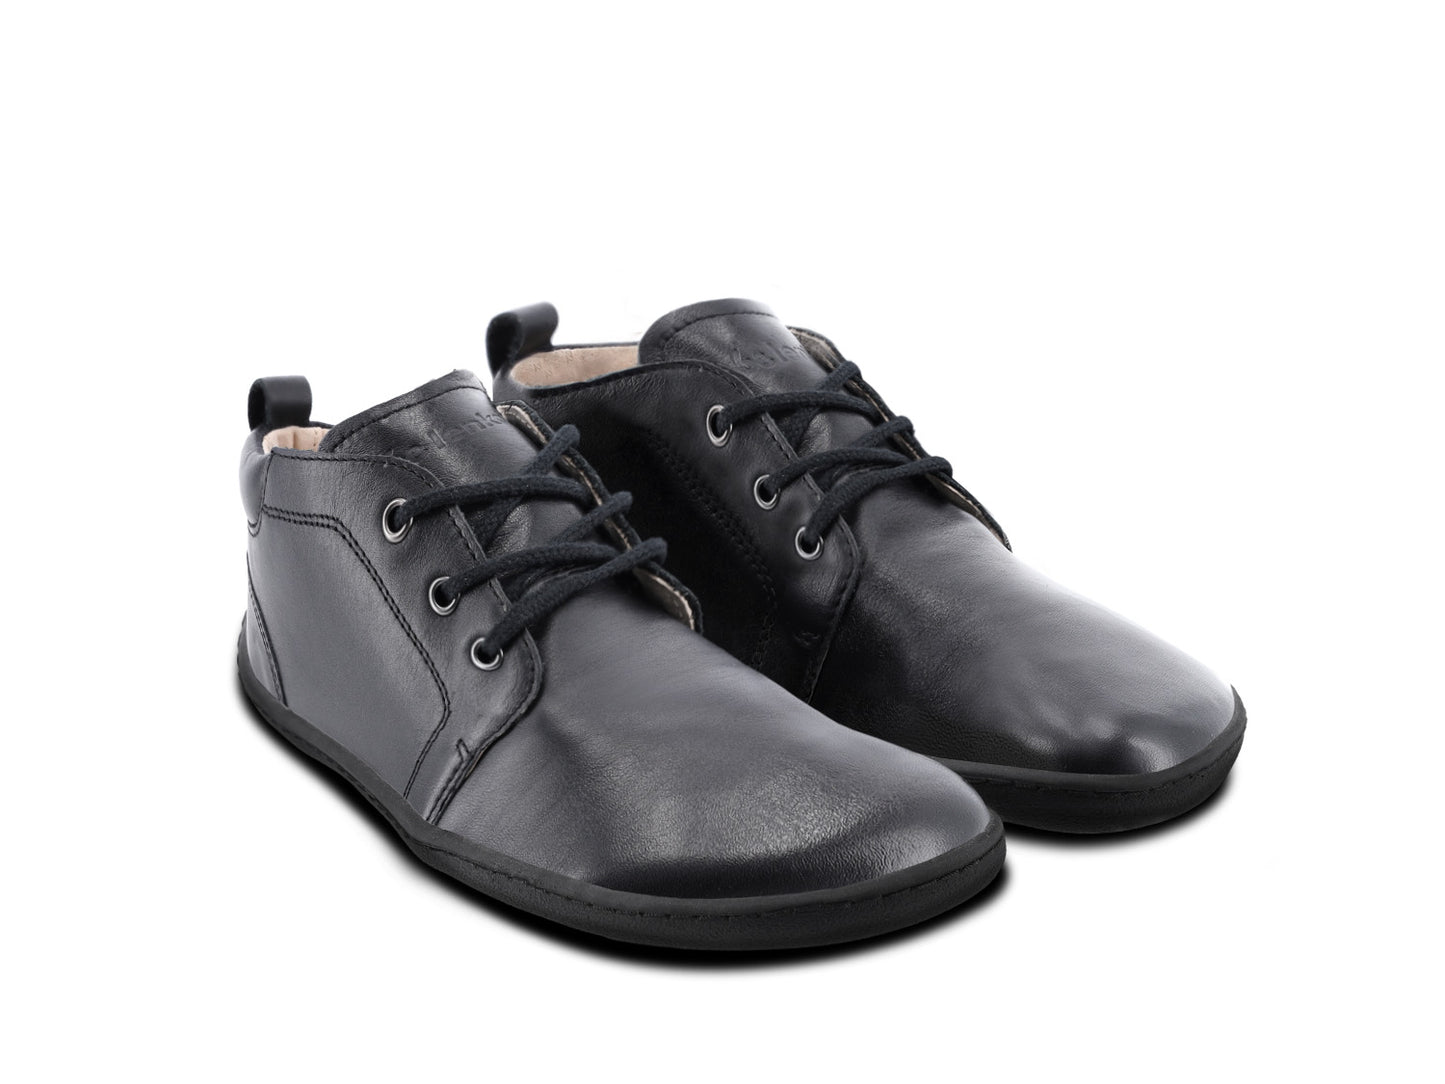 Barefoot Shoes - Be Lenka - Icon - Black 6 OzBarefoot Australia